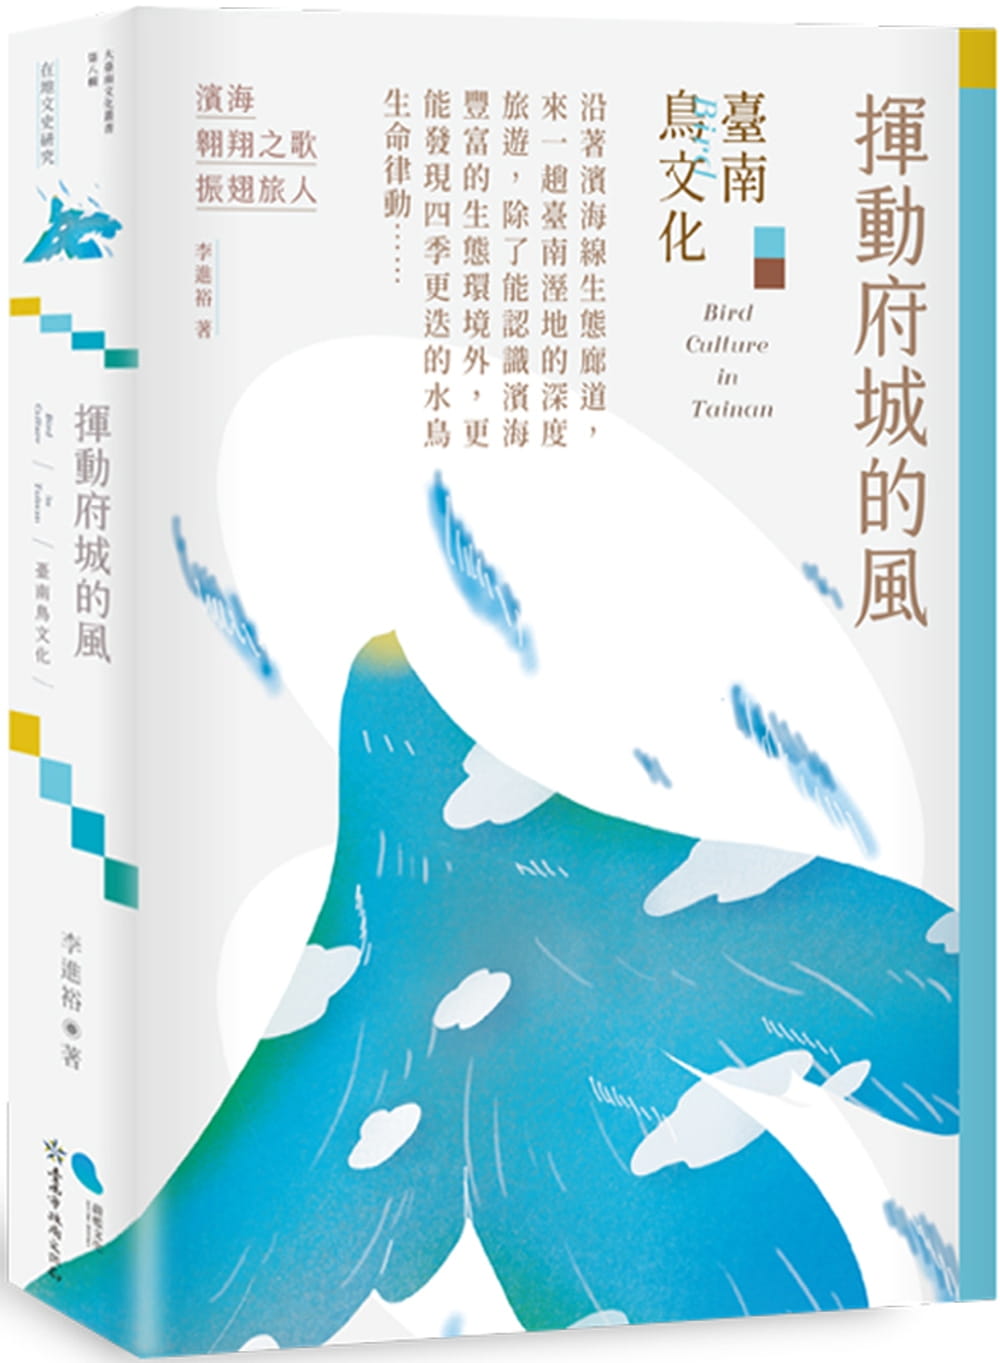 揮動府城的風：臺南鳥文化